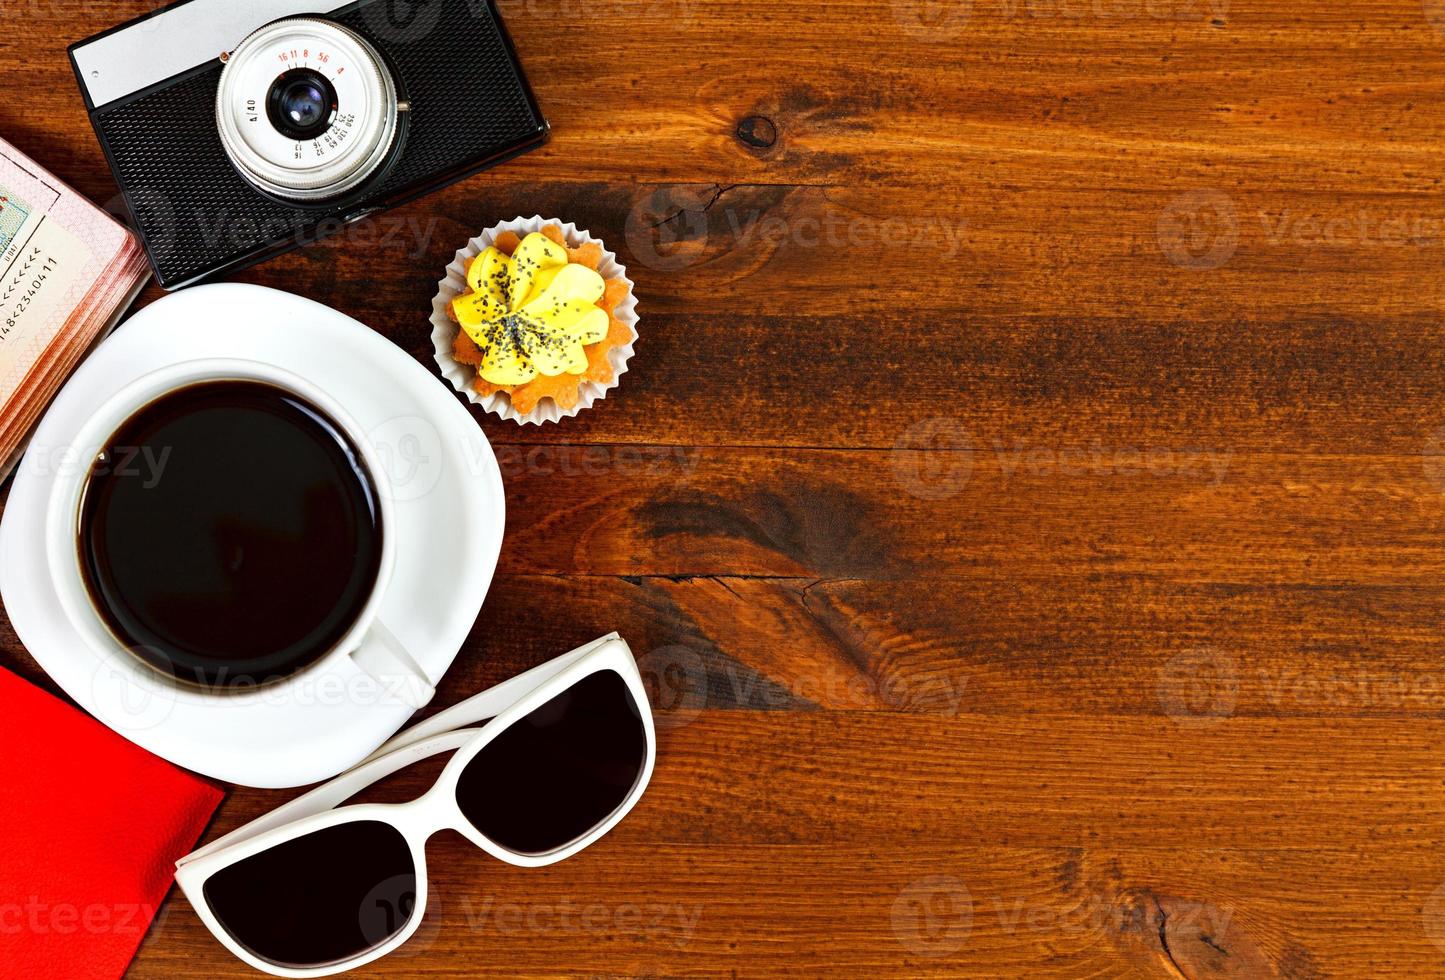 cámara de fotos retro, taza de café, pasaporte, gafas de sol y quequitos en una mesa de madera marrón con espacio para texto, vista superior.